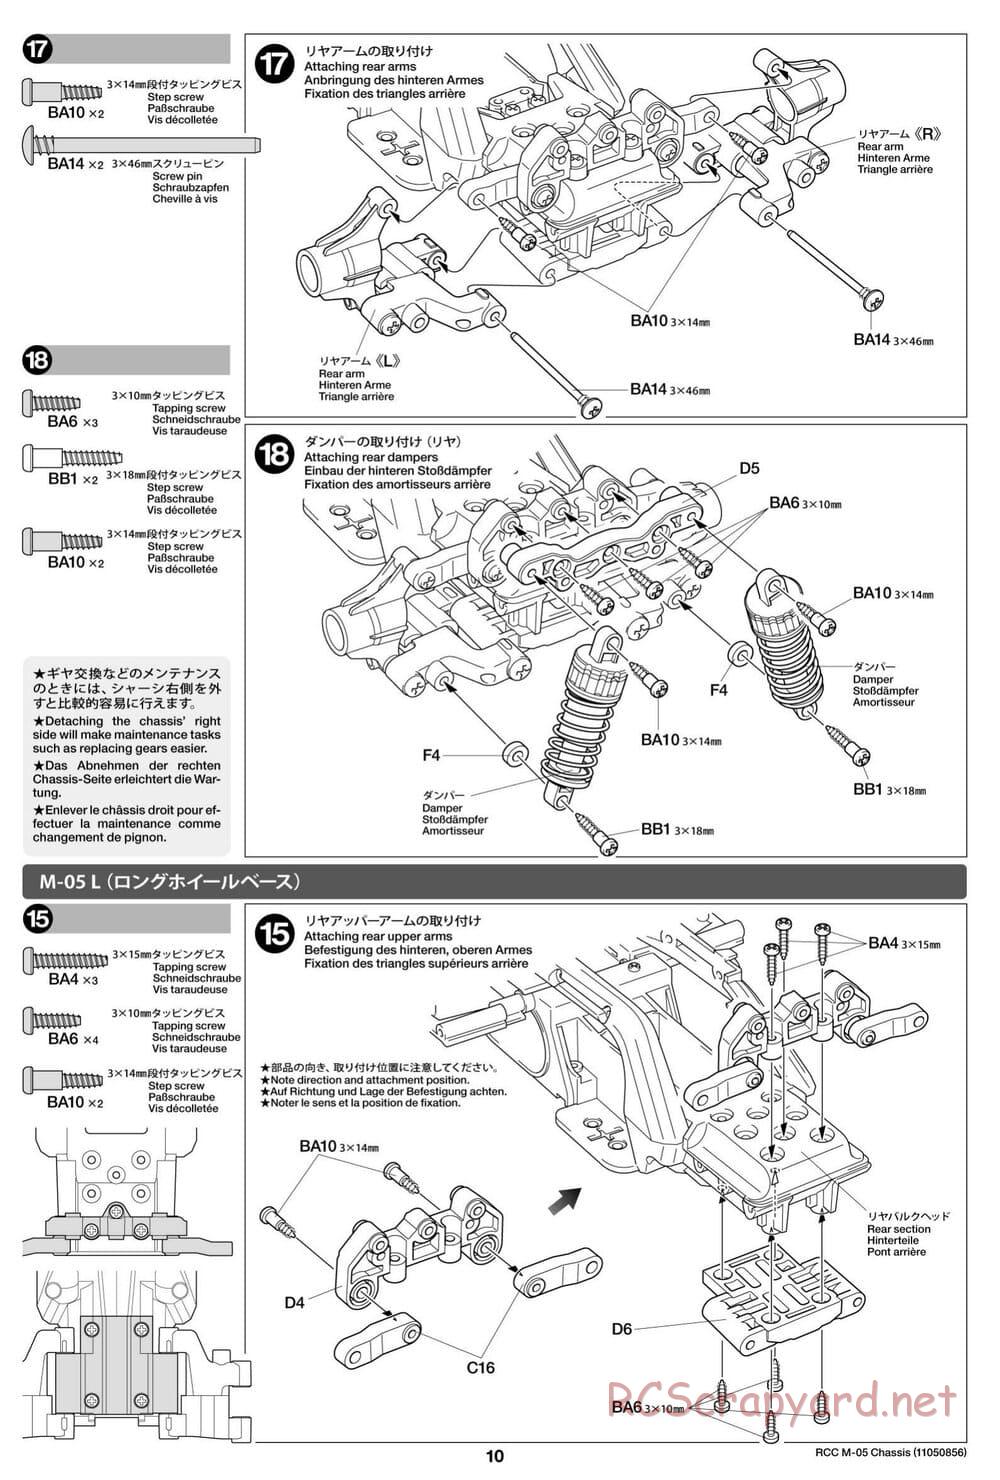 Tamiya - M-05 Chassis - Manual - Page 10